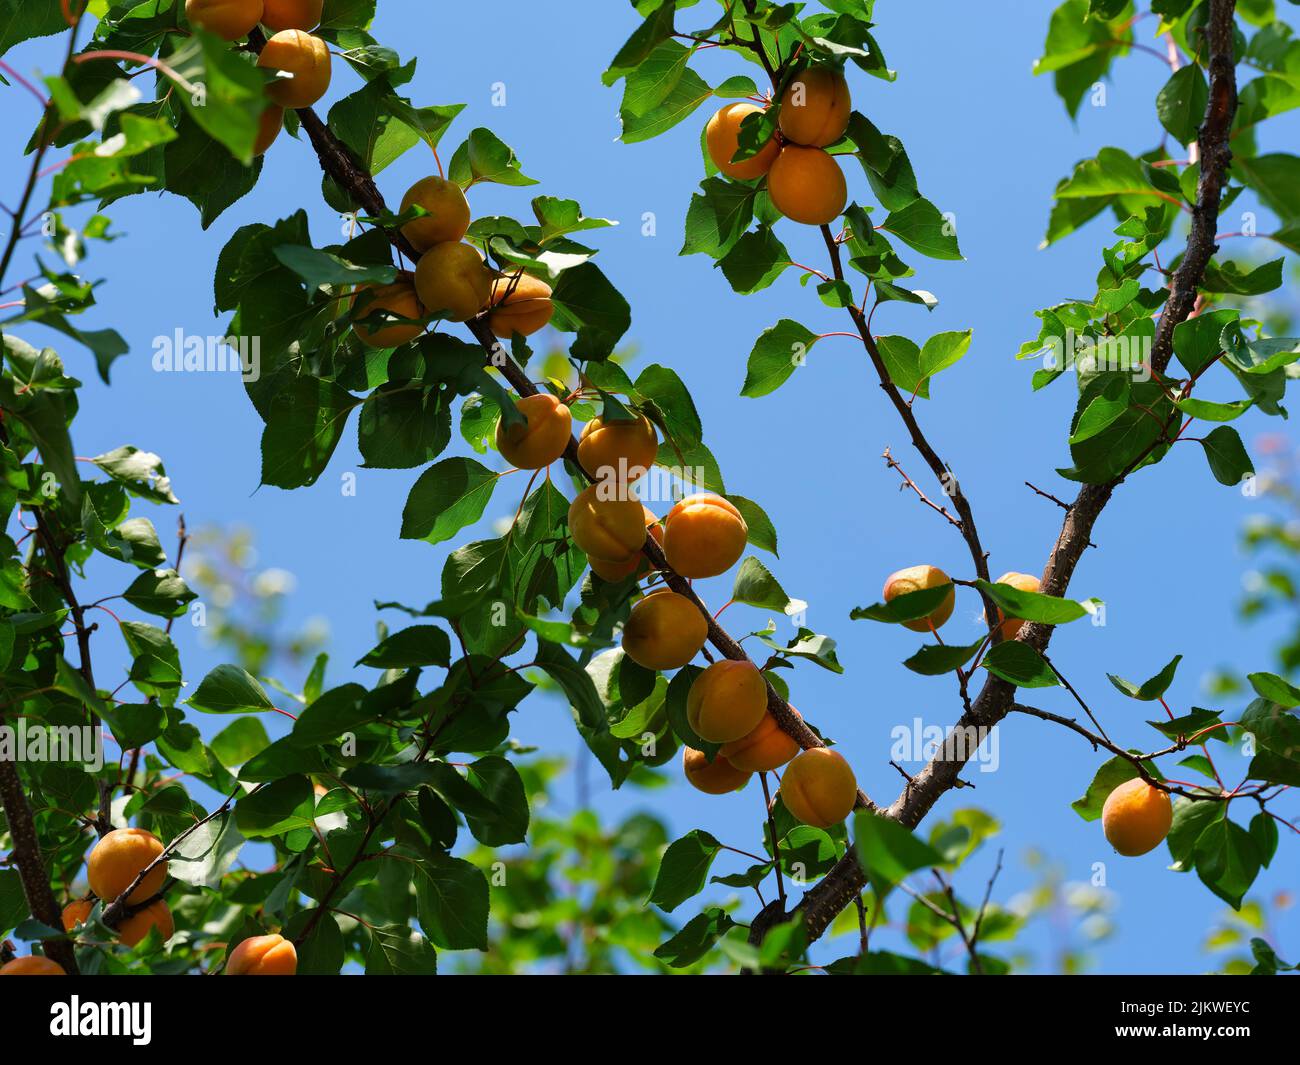 Albaricoques orgánicos maduros sobre ramas de árboles contra el cielo azul. Horario de verano. Foto de stock